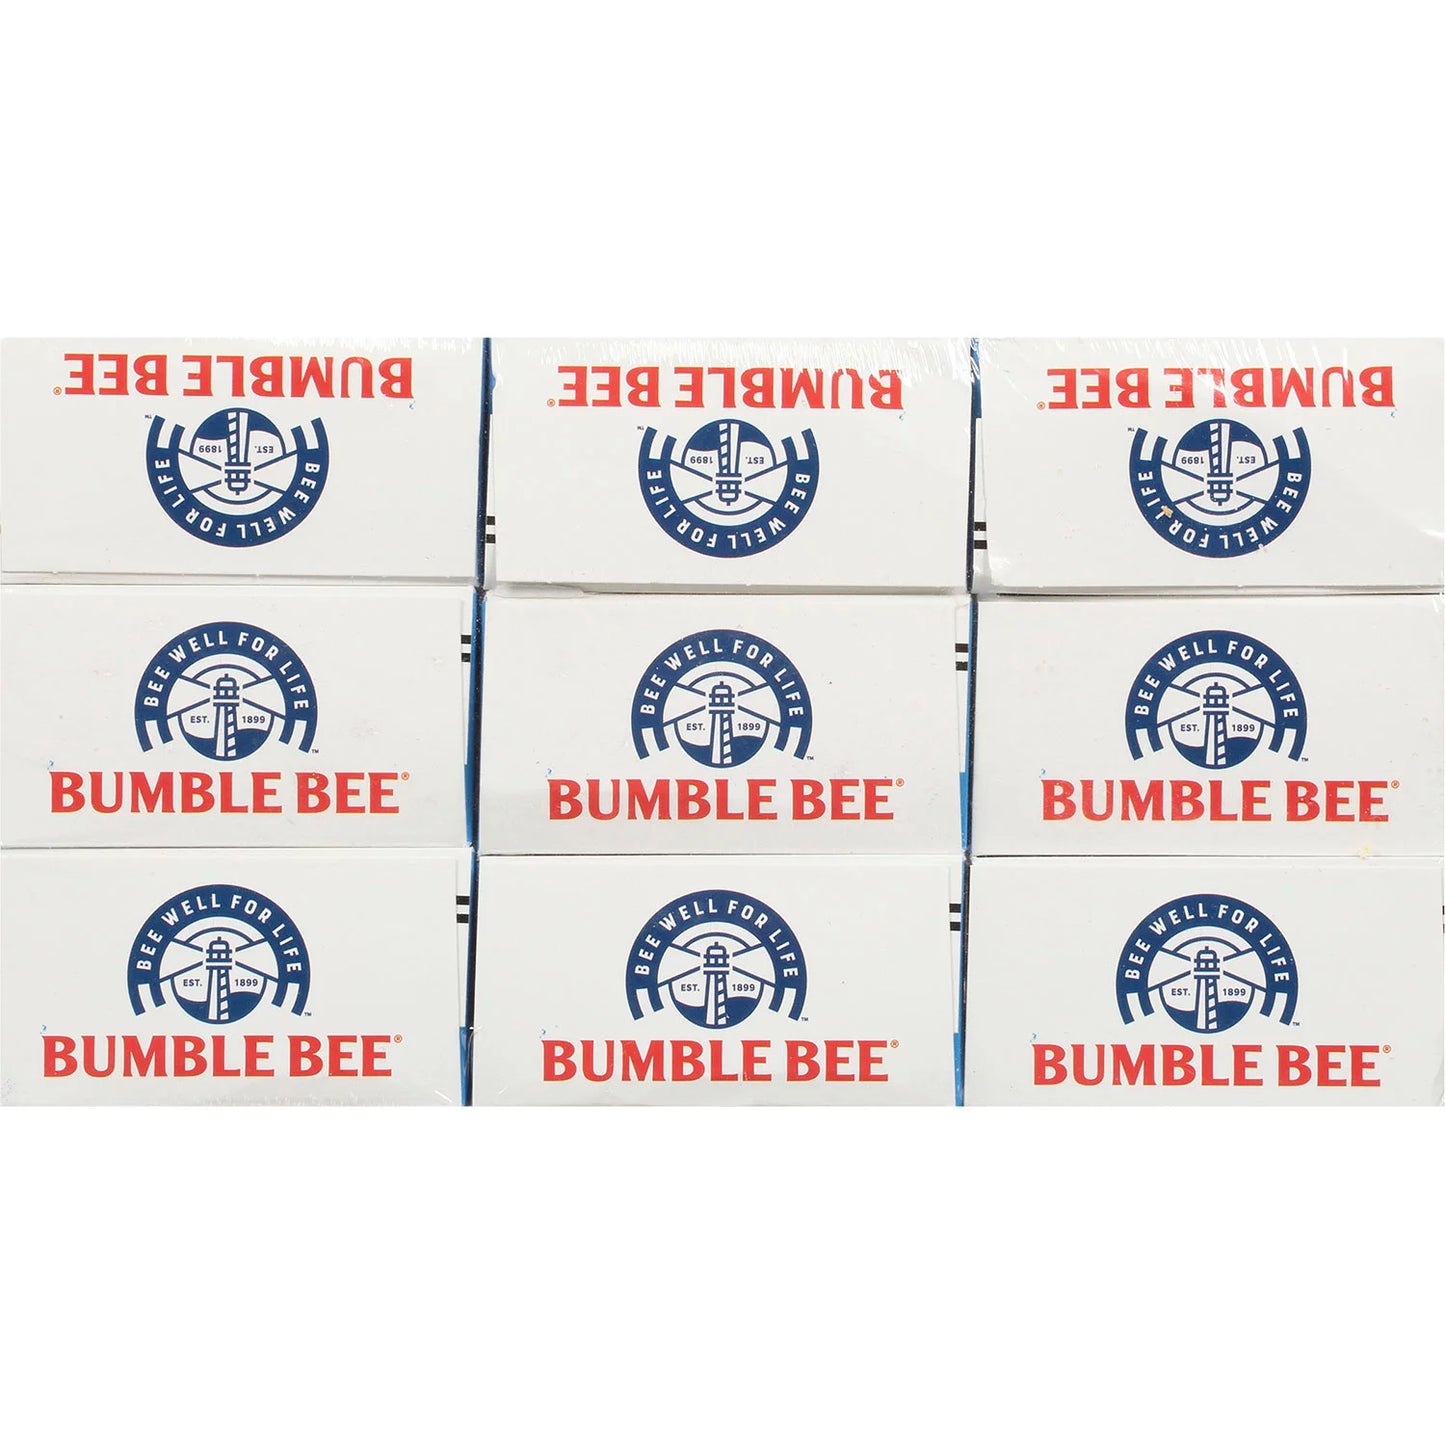 Bumble Bee Tuna Salad Snack On The Run Kit (3.5 oz., 9 ct.)